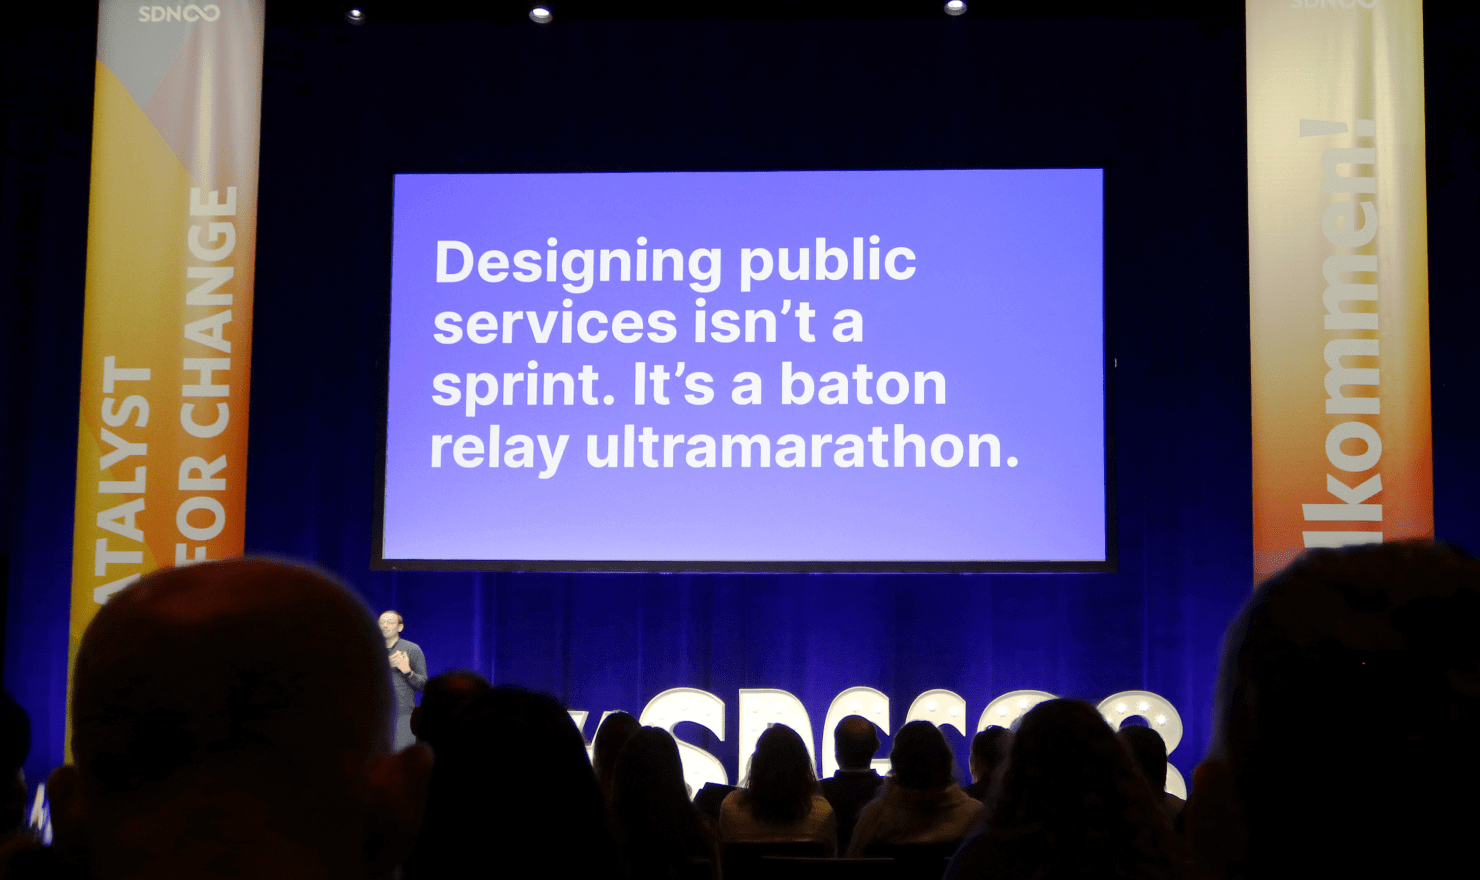 画像：Martin Jordan 氏とKara Kane 氏のトーク中のスライド “Designing public services isn’t a sprint. It’s a baton relay ultramarathon.”